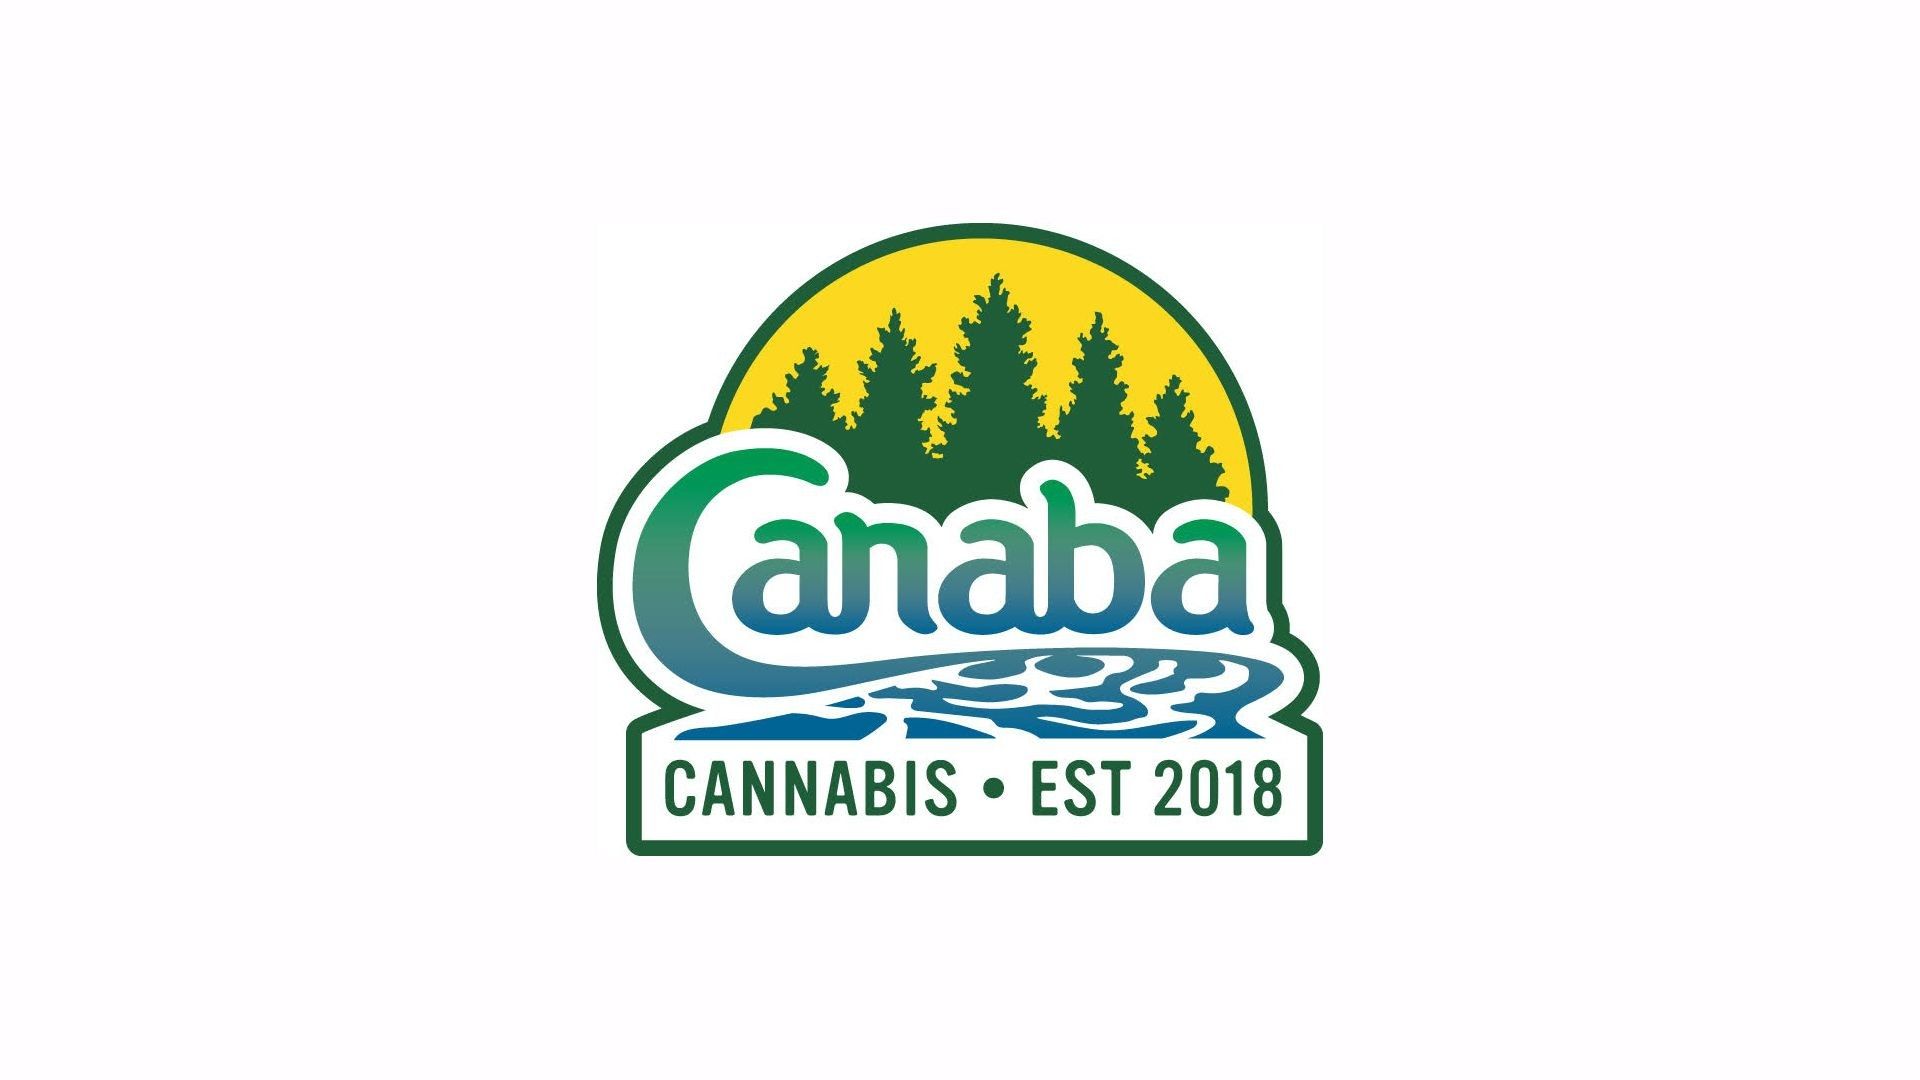 Cannabis Store Canaba Cannabis - 1